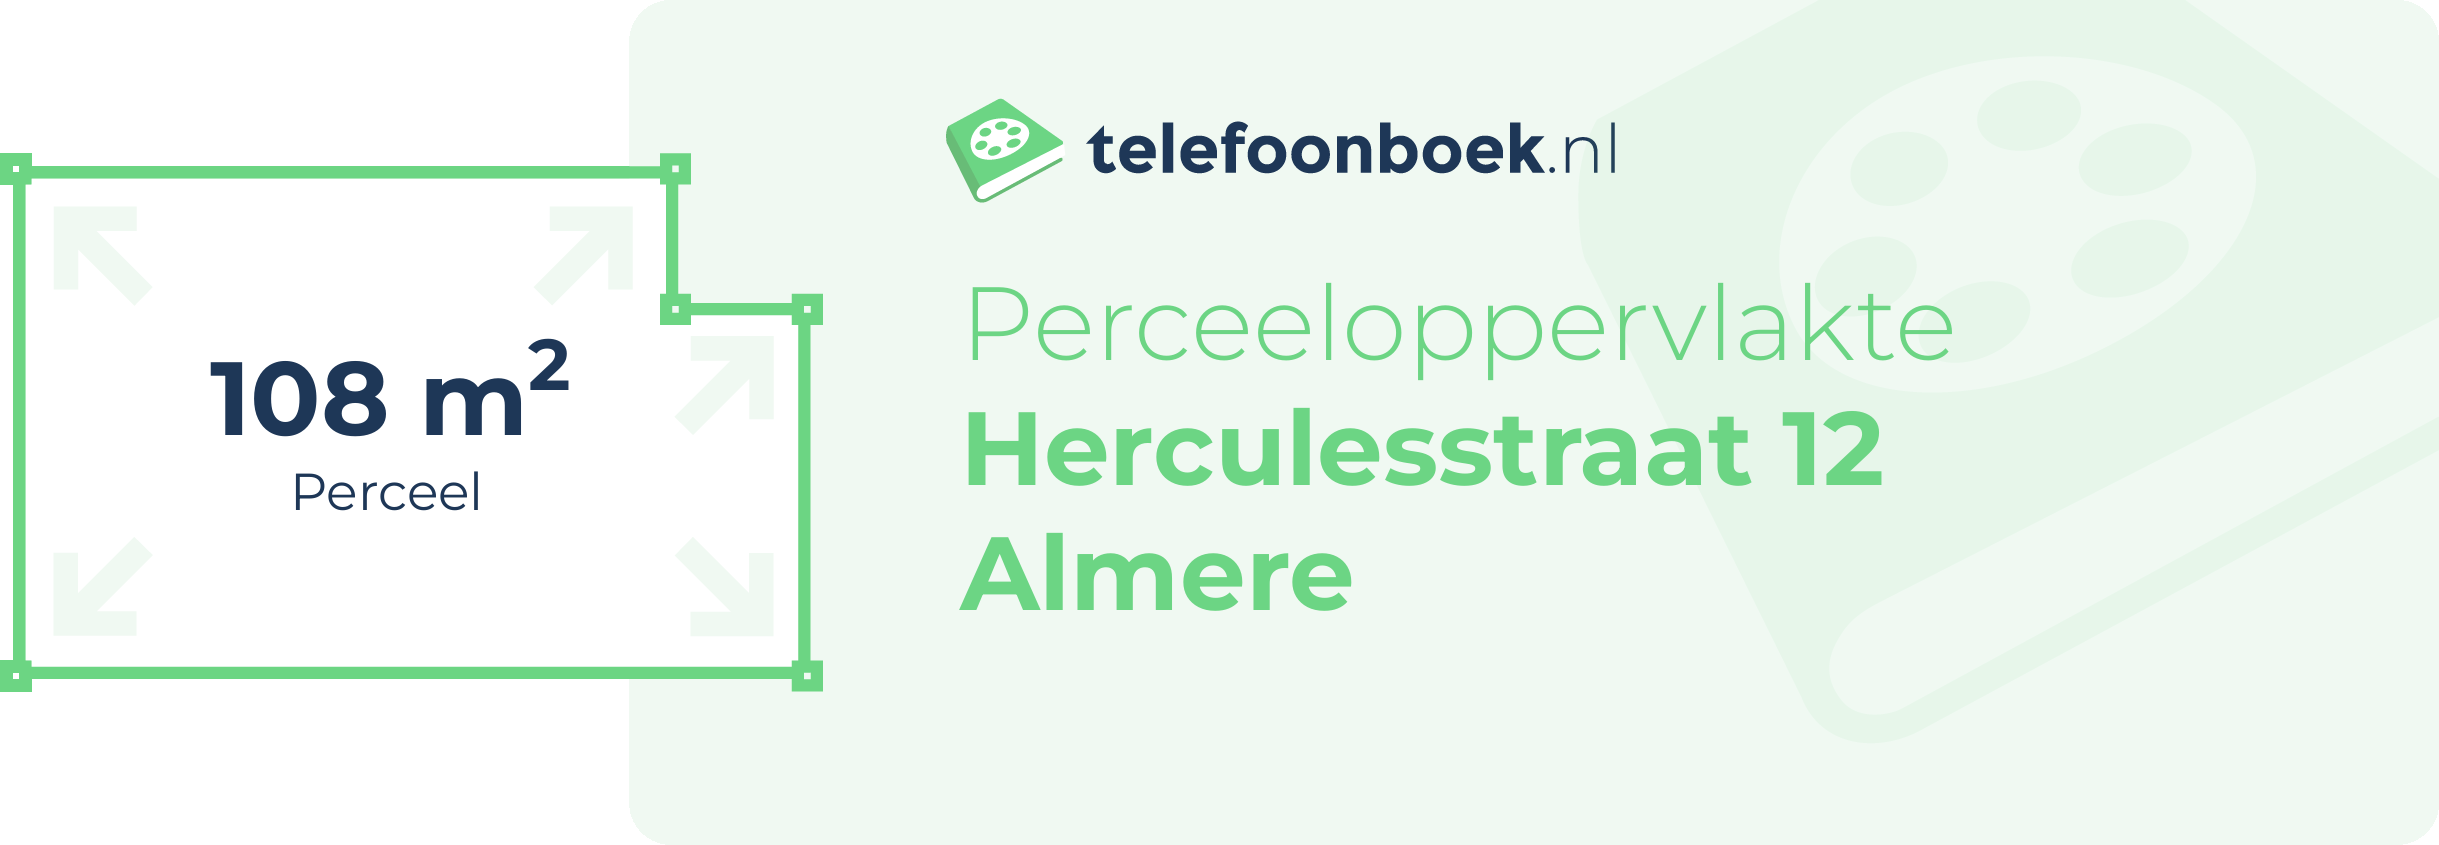 Perceeloppervlakte Herculesstraat 12 Almere